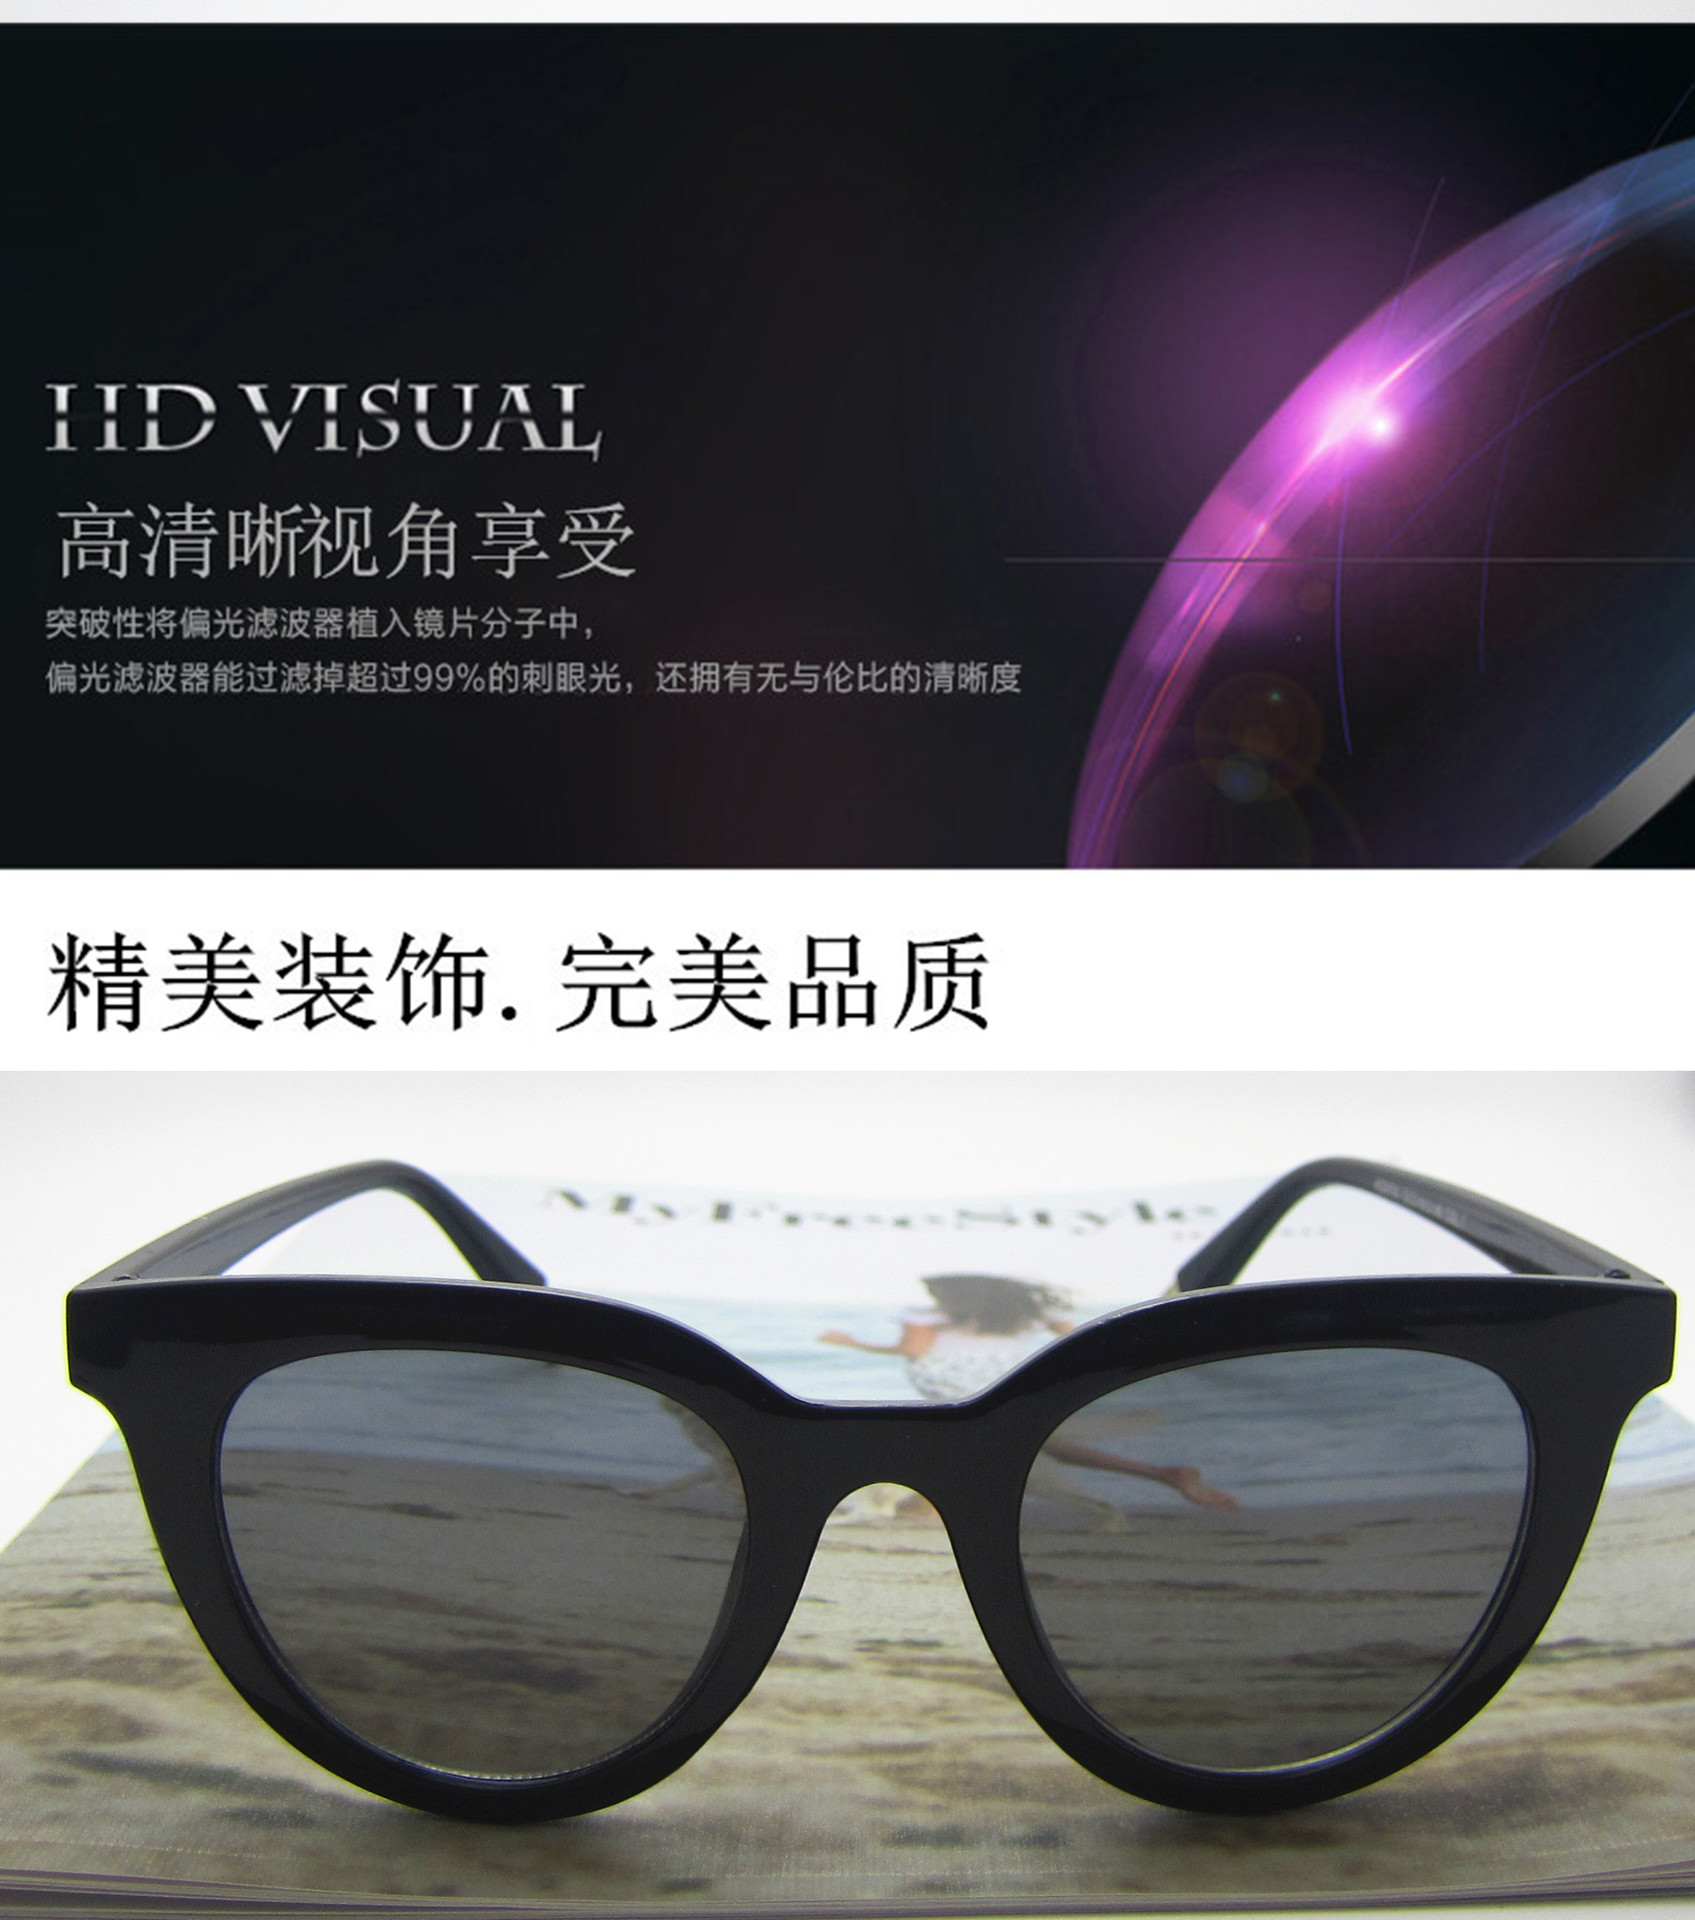 新款太阳镜 欧美潮流猫眼墨镜 网红同款个性海洋片9780太阳眼镜示例图5